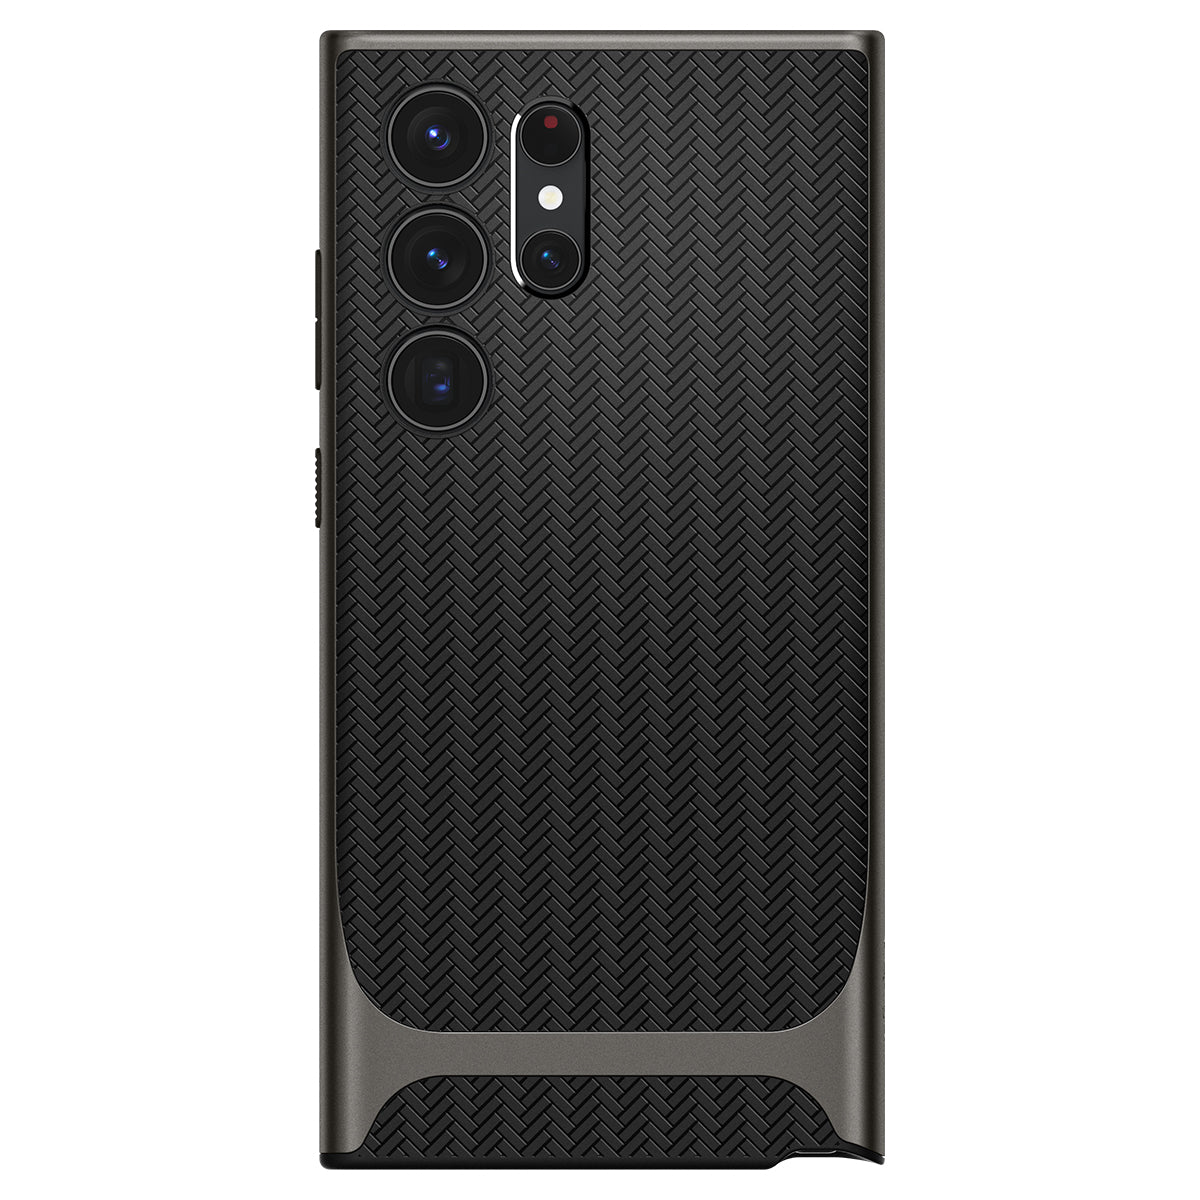 ỐP lưng Spigen Ultra Neo Hybrid cho Samsung Galaxy S23 Ultra - Thiết kế mỏng nhẹ, chống sốc, hỗ trợ sạc không dây, chống bẩn, viền camera cao - Hàng chính hãng